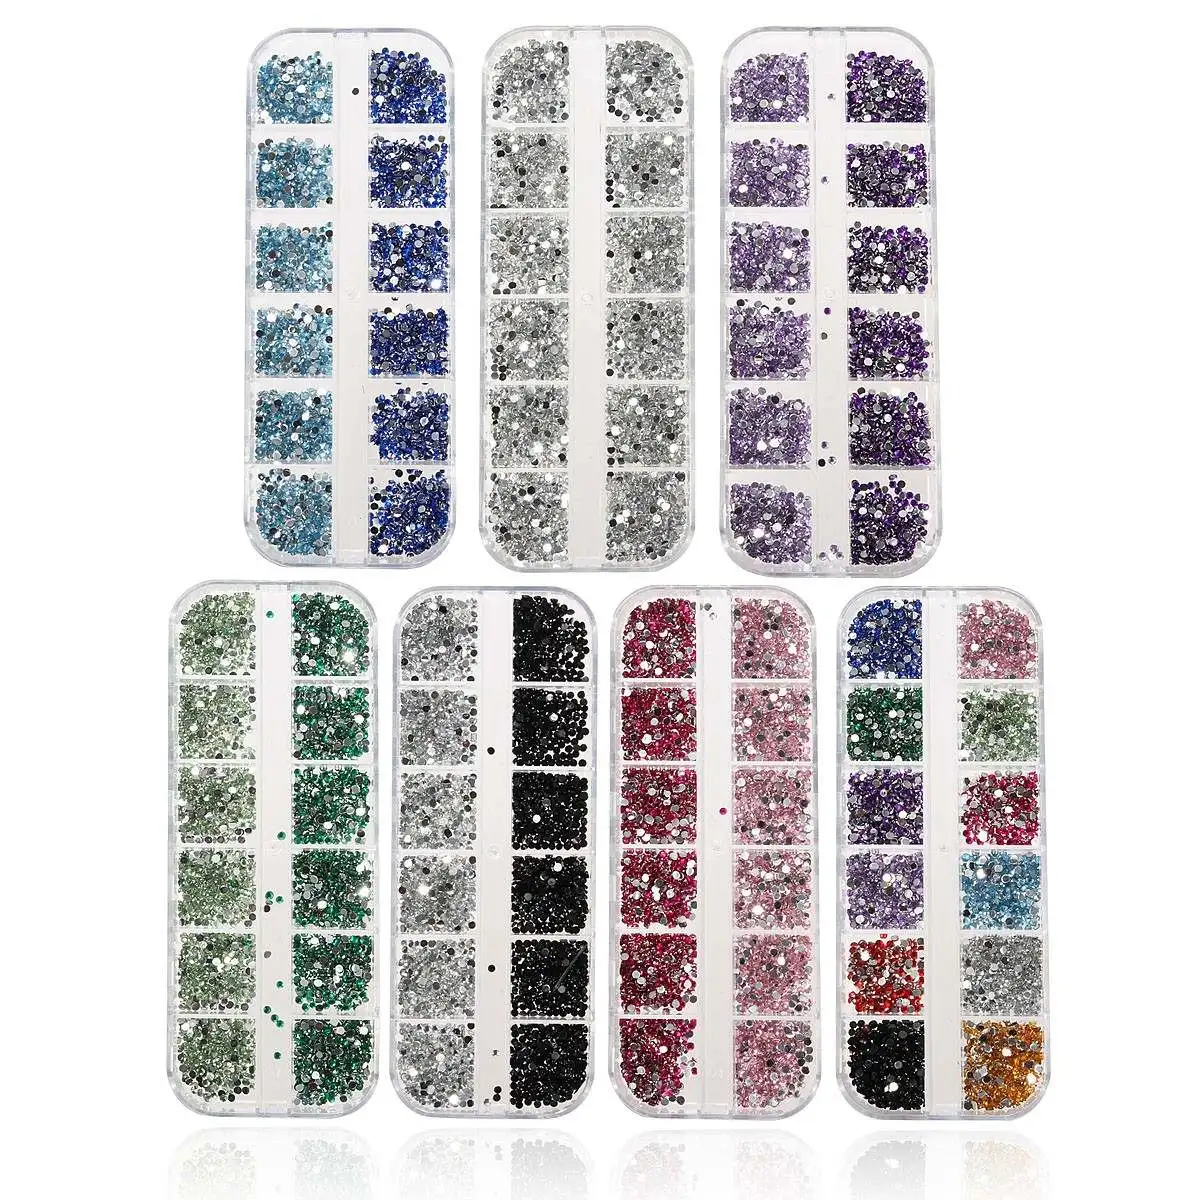 3000 шт DIY драгоценные камни гвозди бриллианты каменные кристаллы стеклянные стразы для ногтей 2 мм плоские круглые бусины с коробкой для хранения